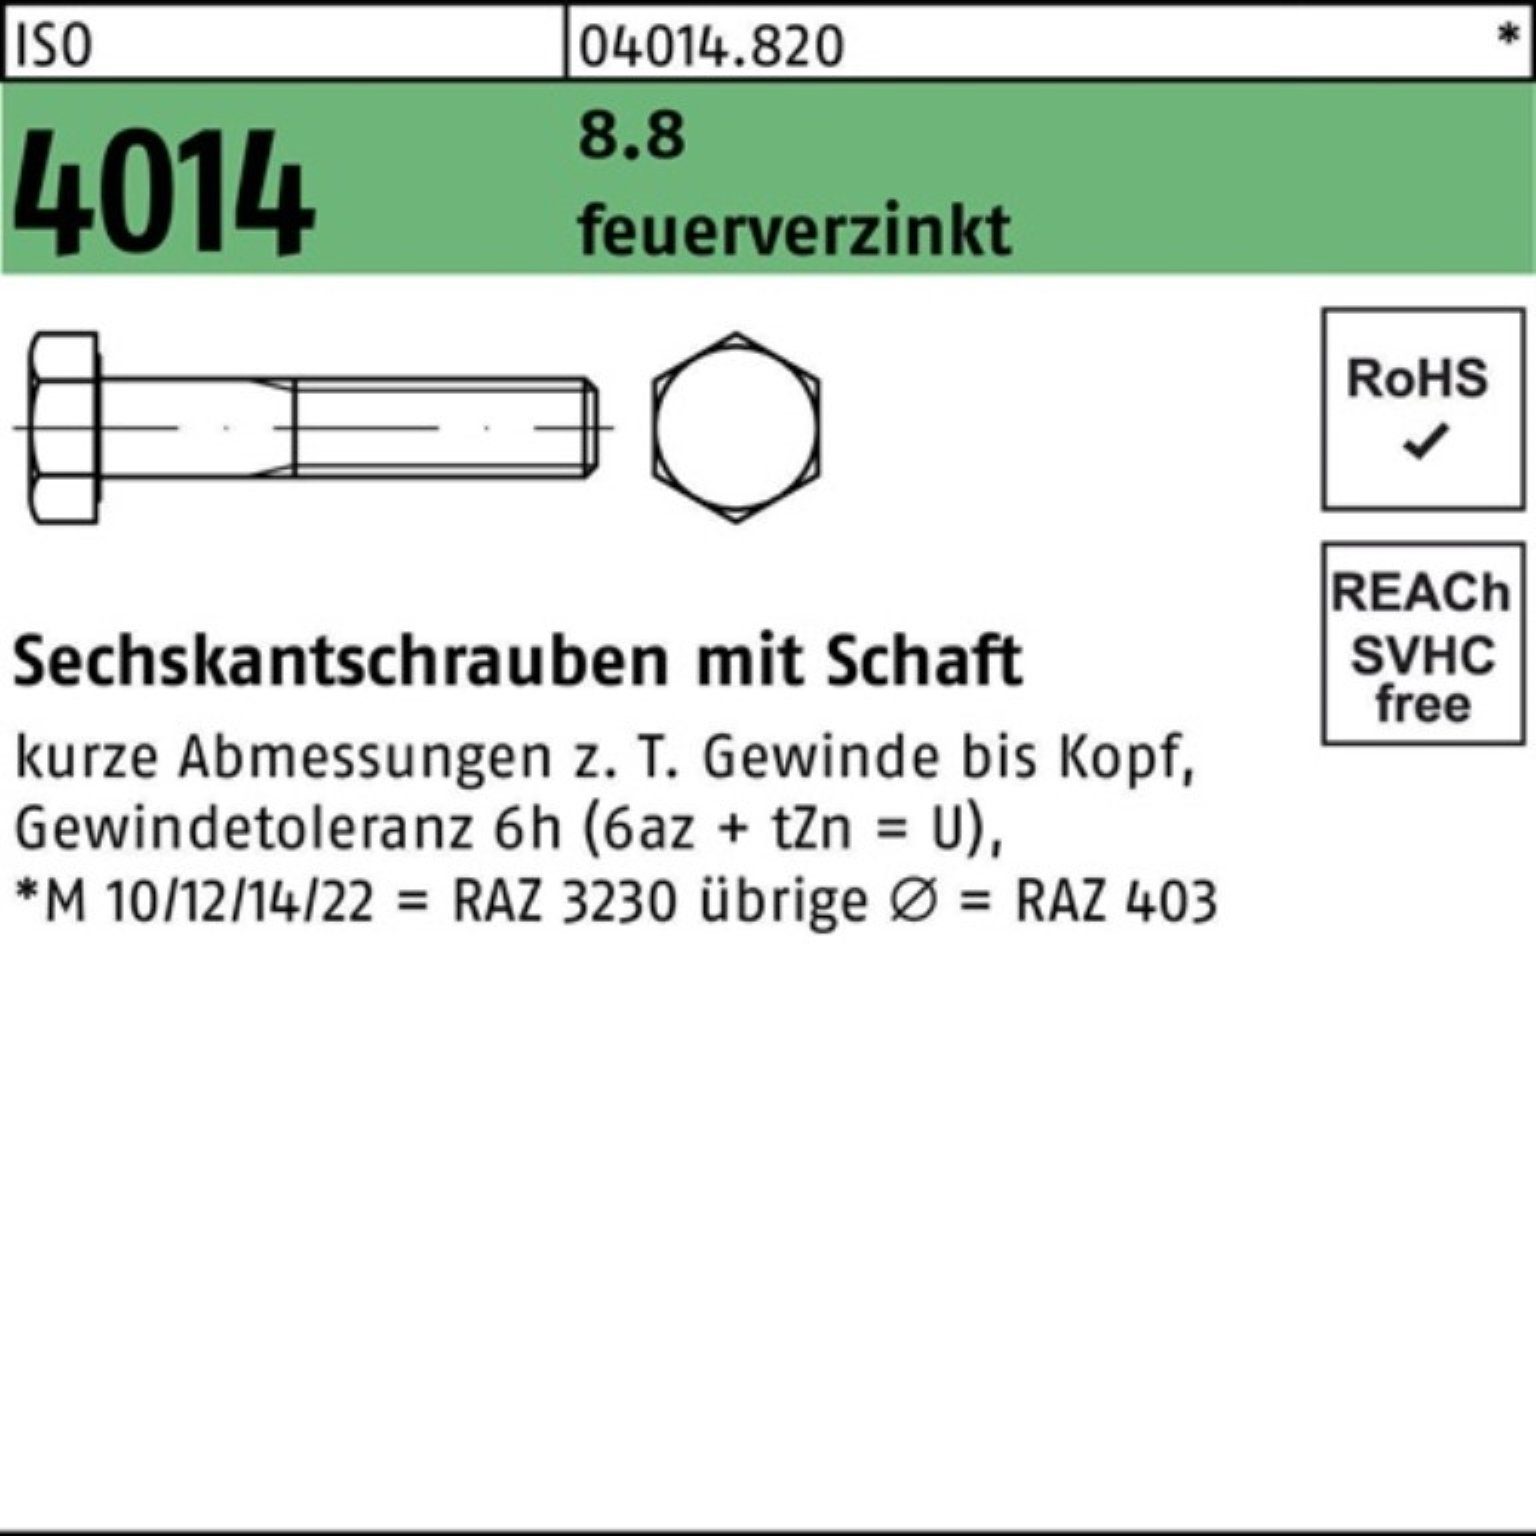 Bufab Sechskantschraube 100er Pack Sechskantschraube ISO 4014 Schaft M10x 70 8.8 feuerverz. 10